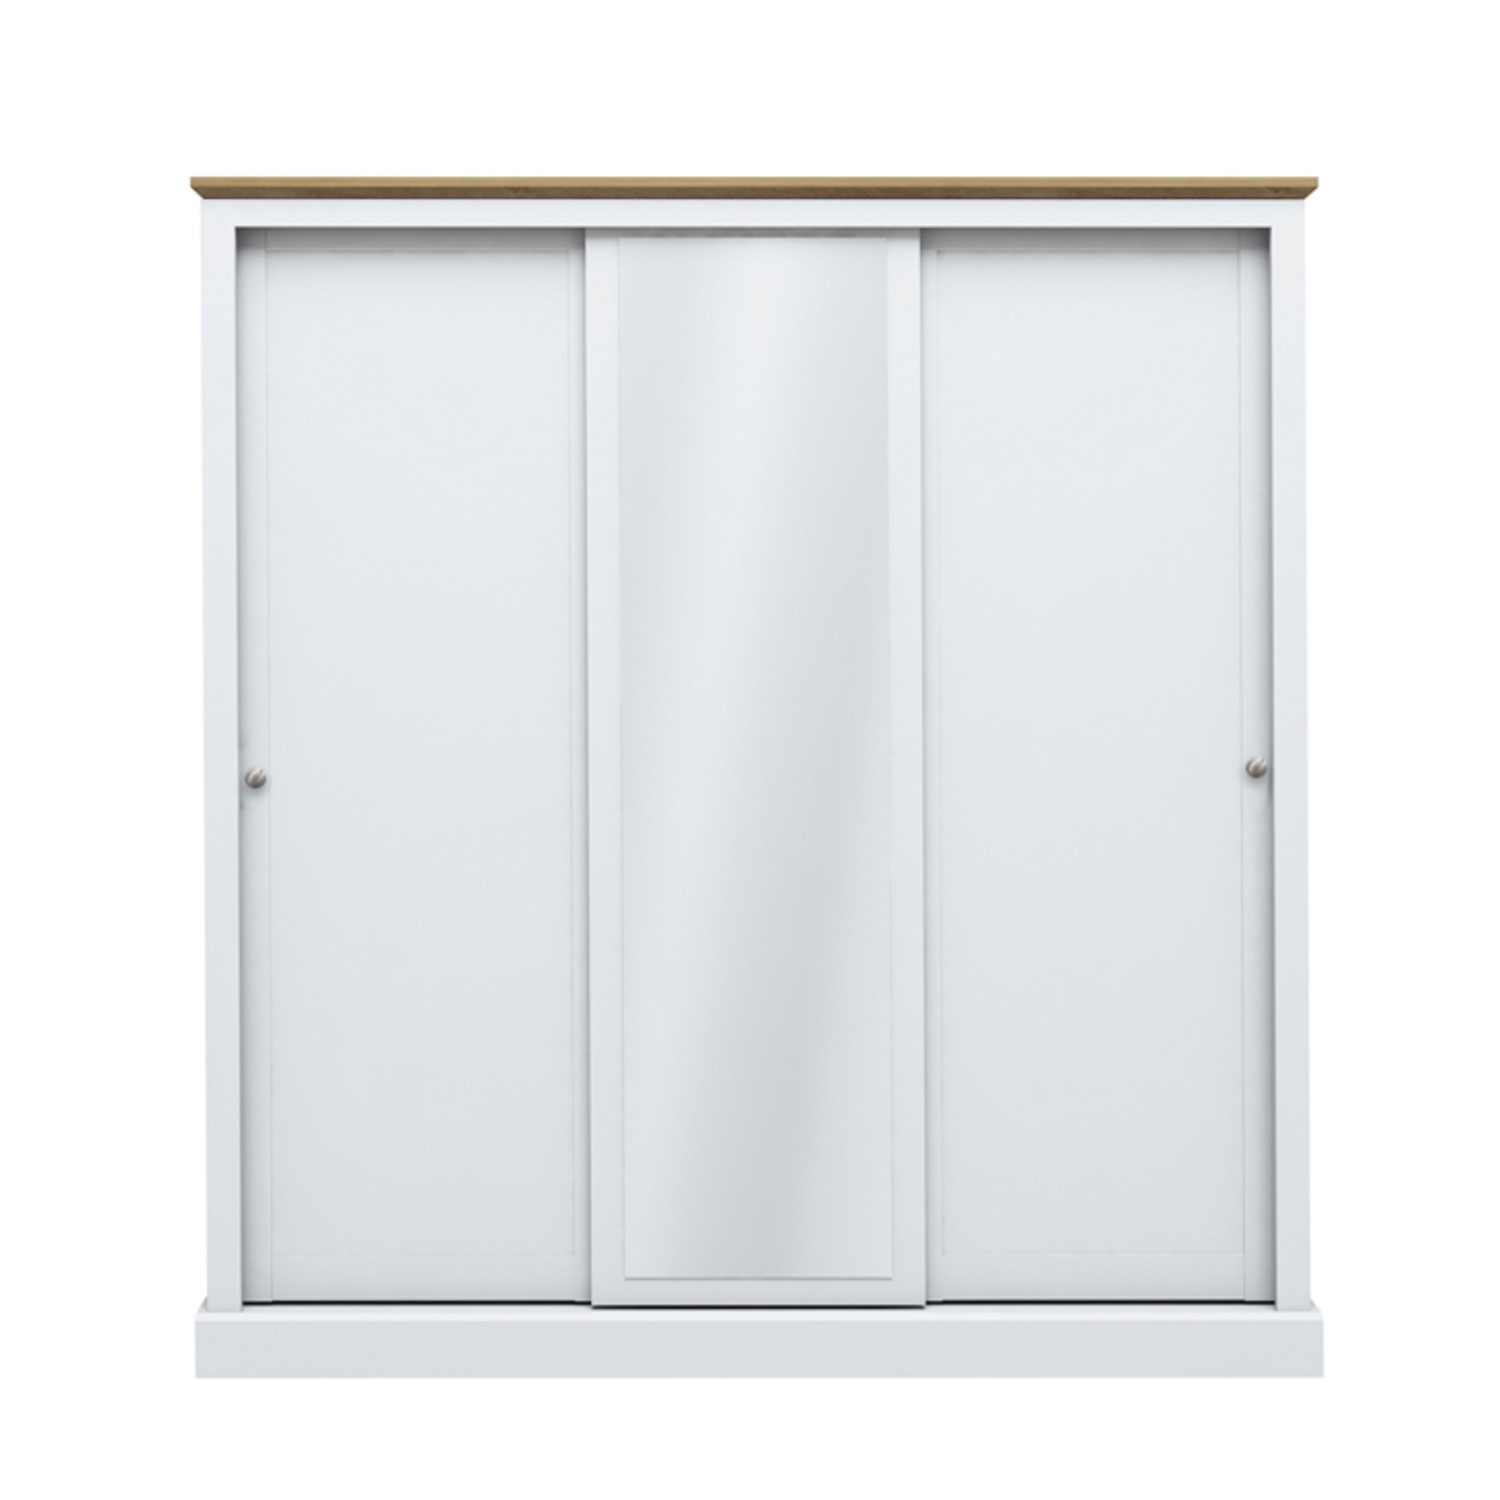 Photo of Lpd white mirrored 3 door sliding wardrobe - devon